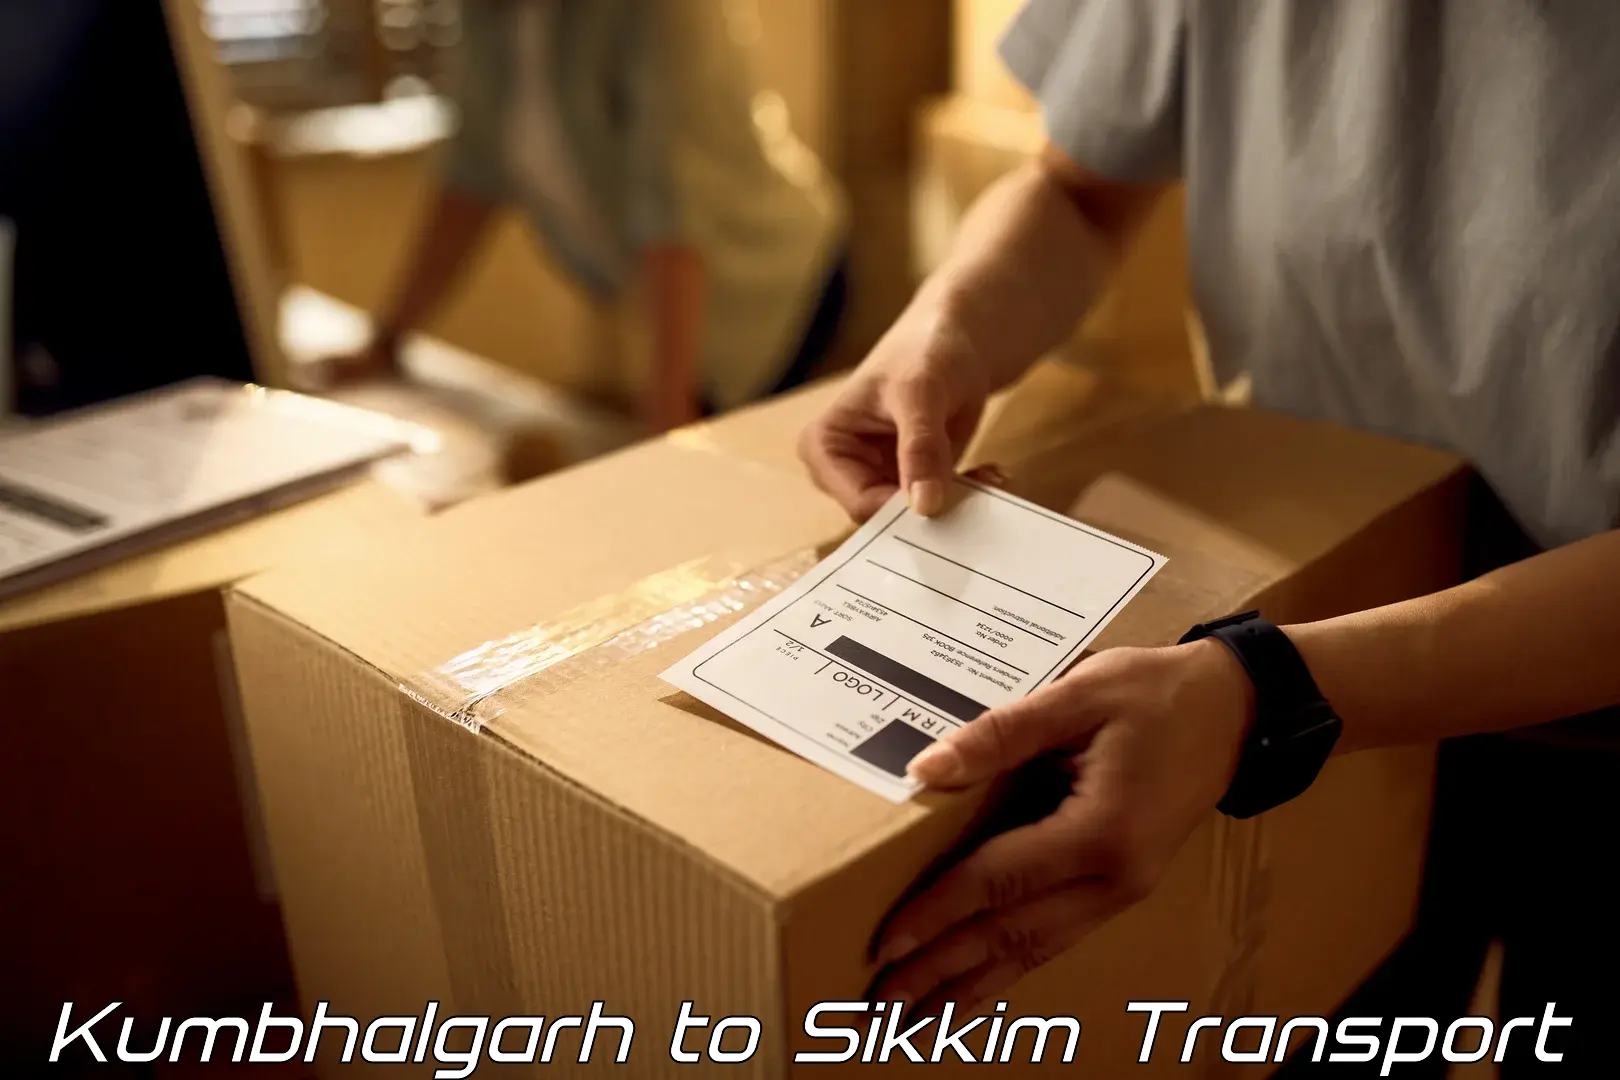 Shipping partner Kumbhalgarh to East Sikkim